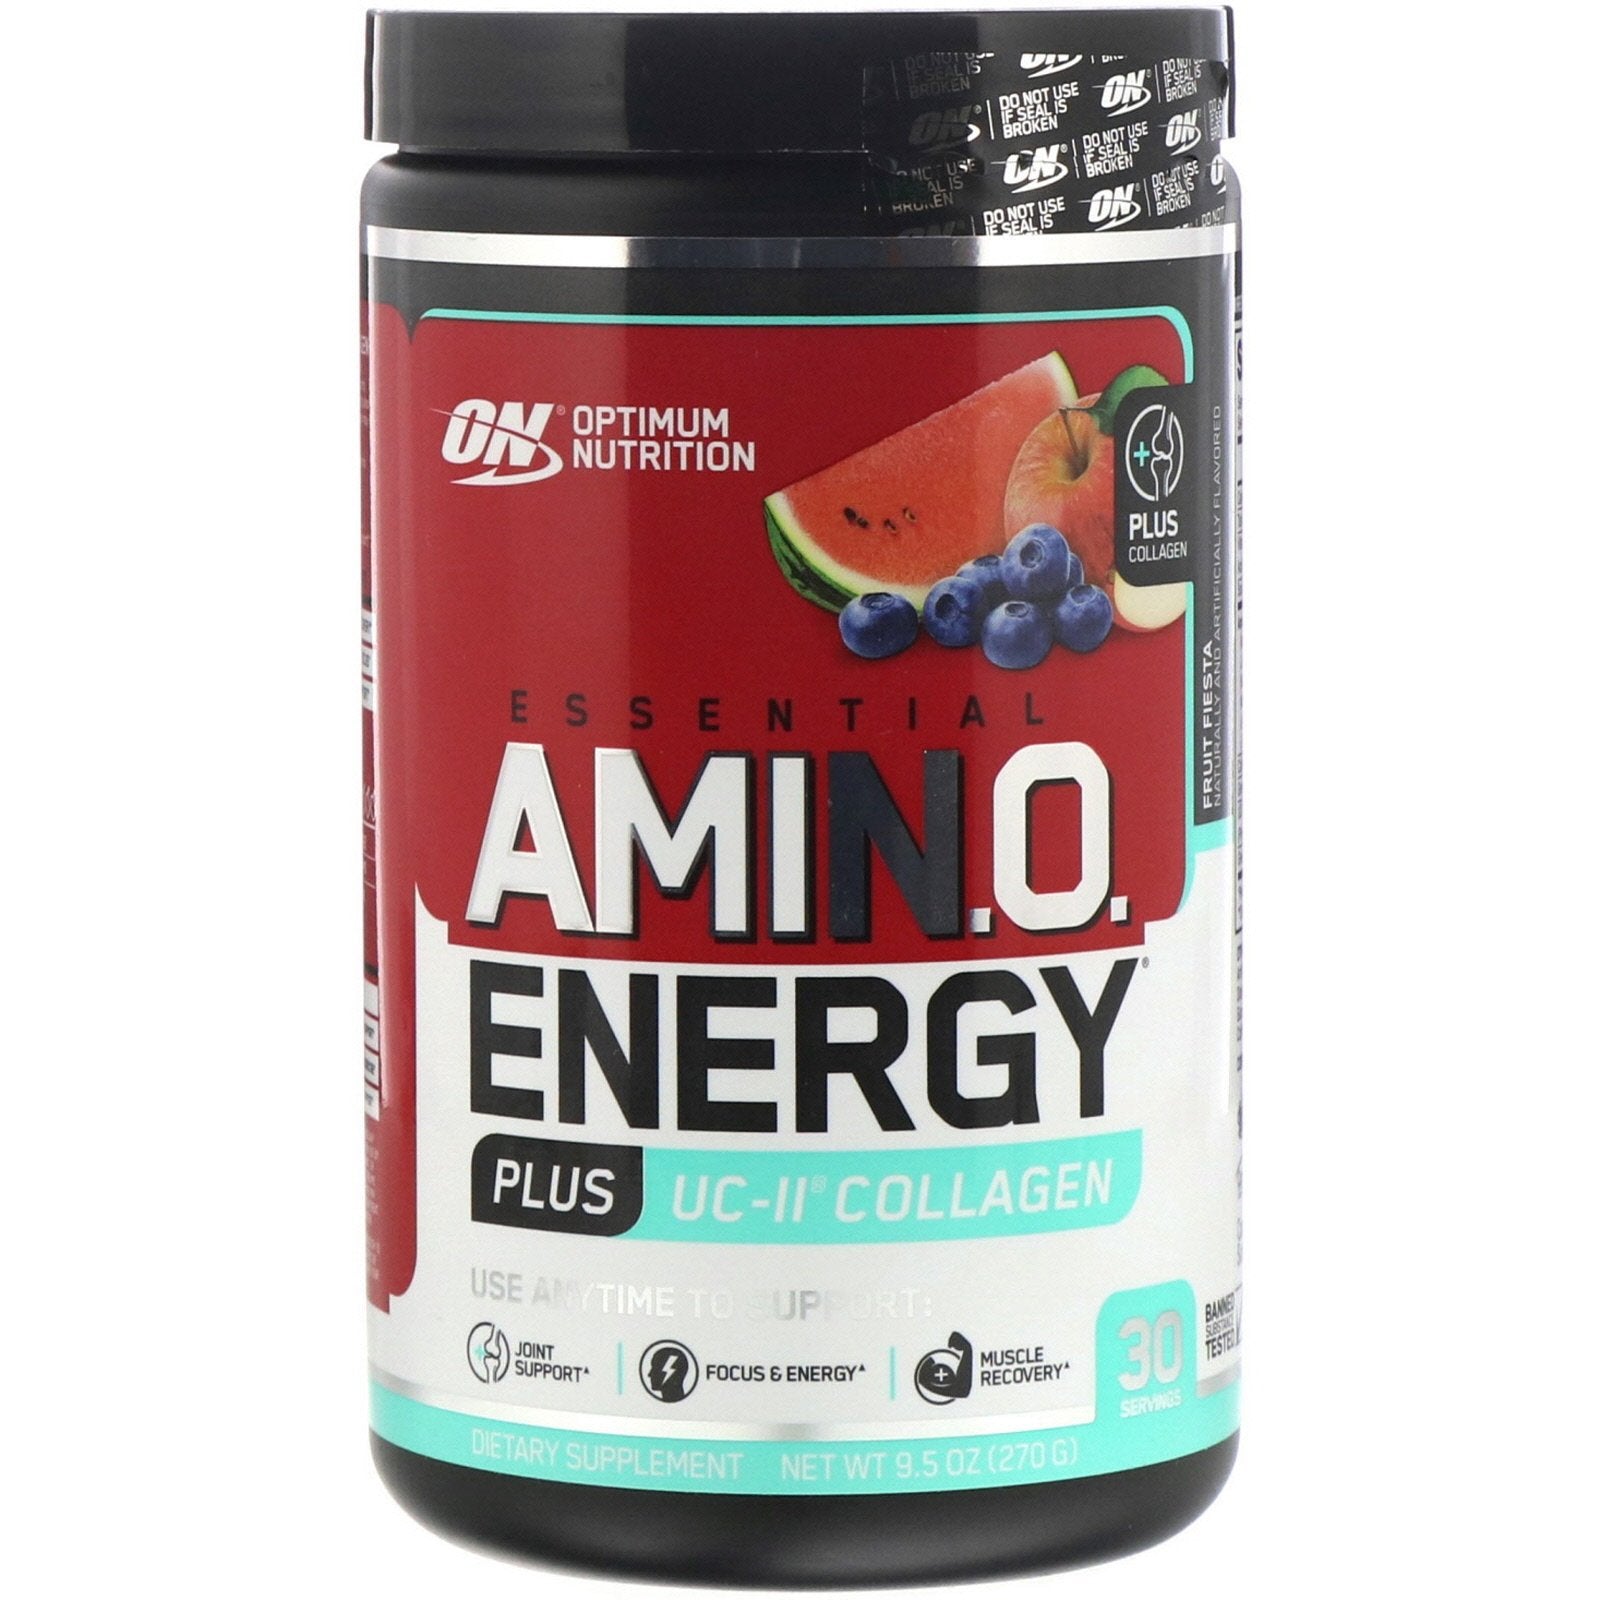 Optimum Nutrition, ESSENTIAL AMIN.O. ENERGY PLUS UC-II COLLAGEN,9.5 oz (270 g)